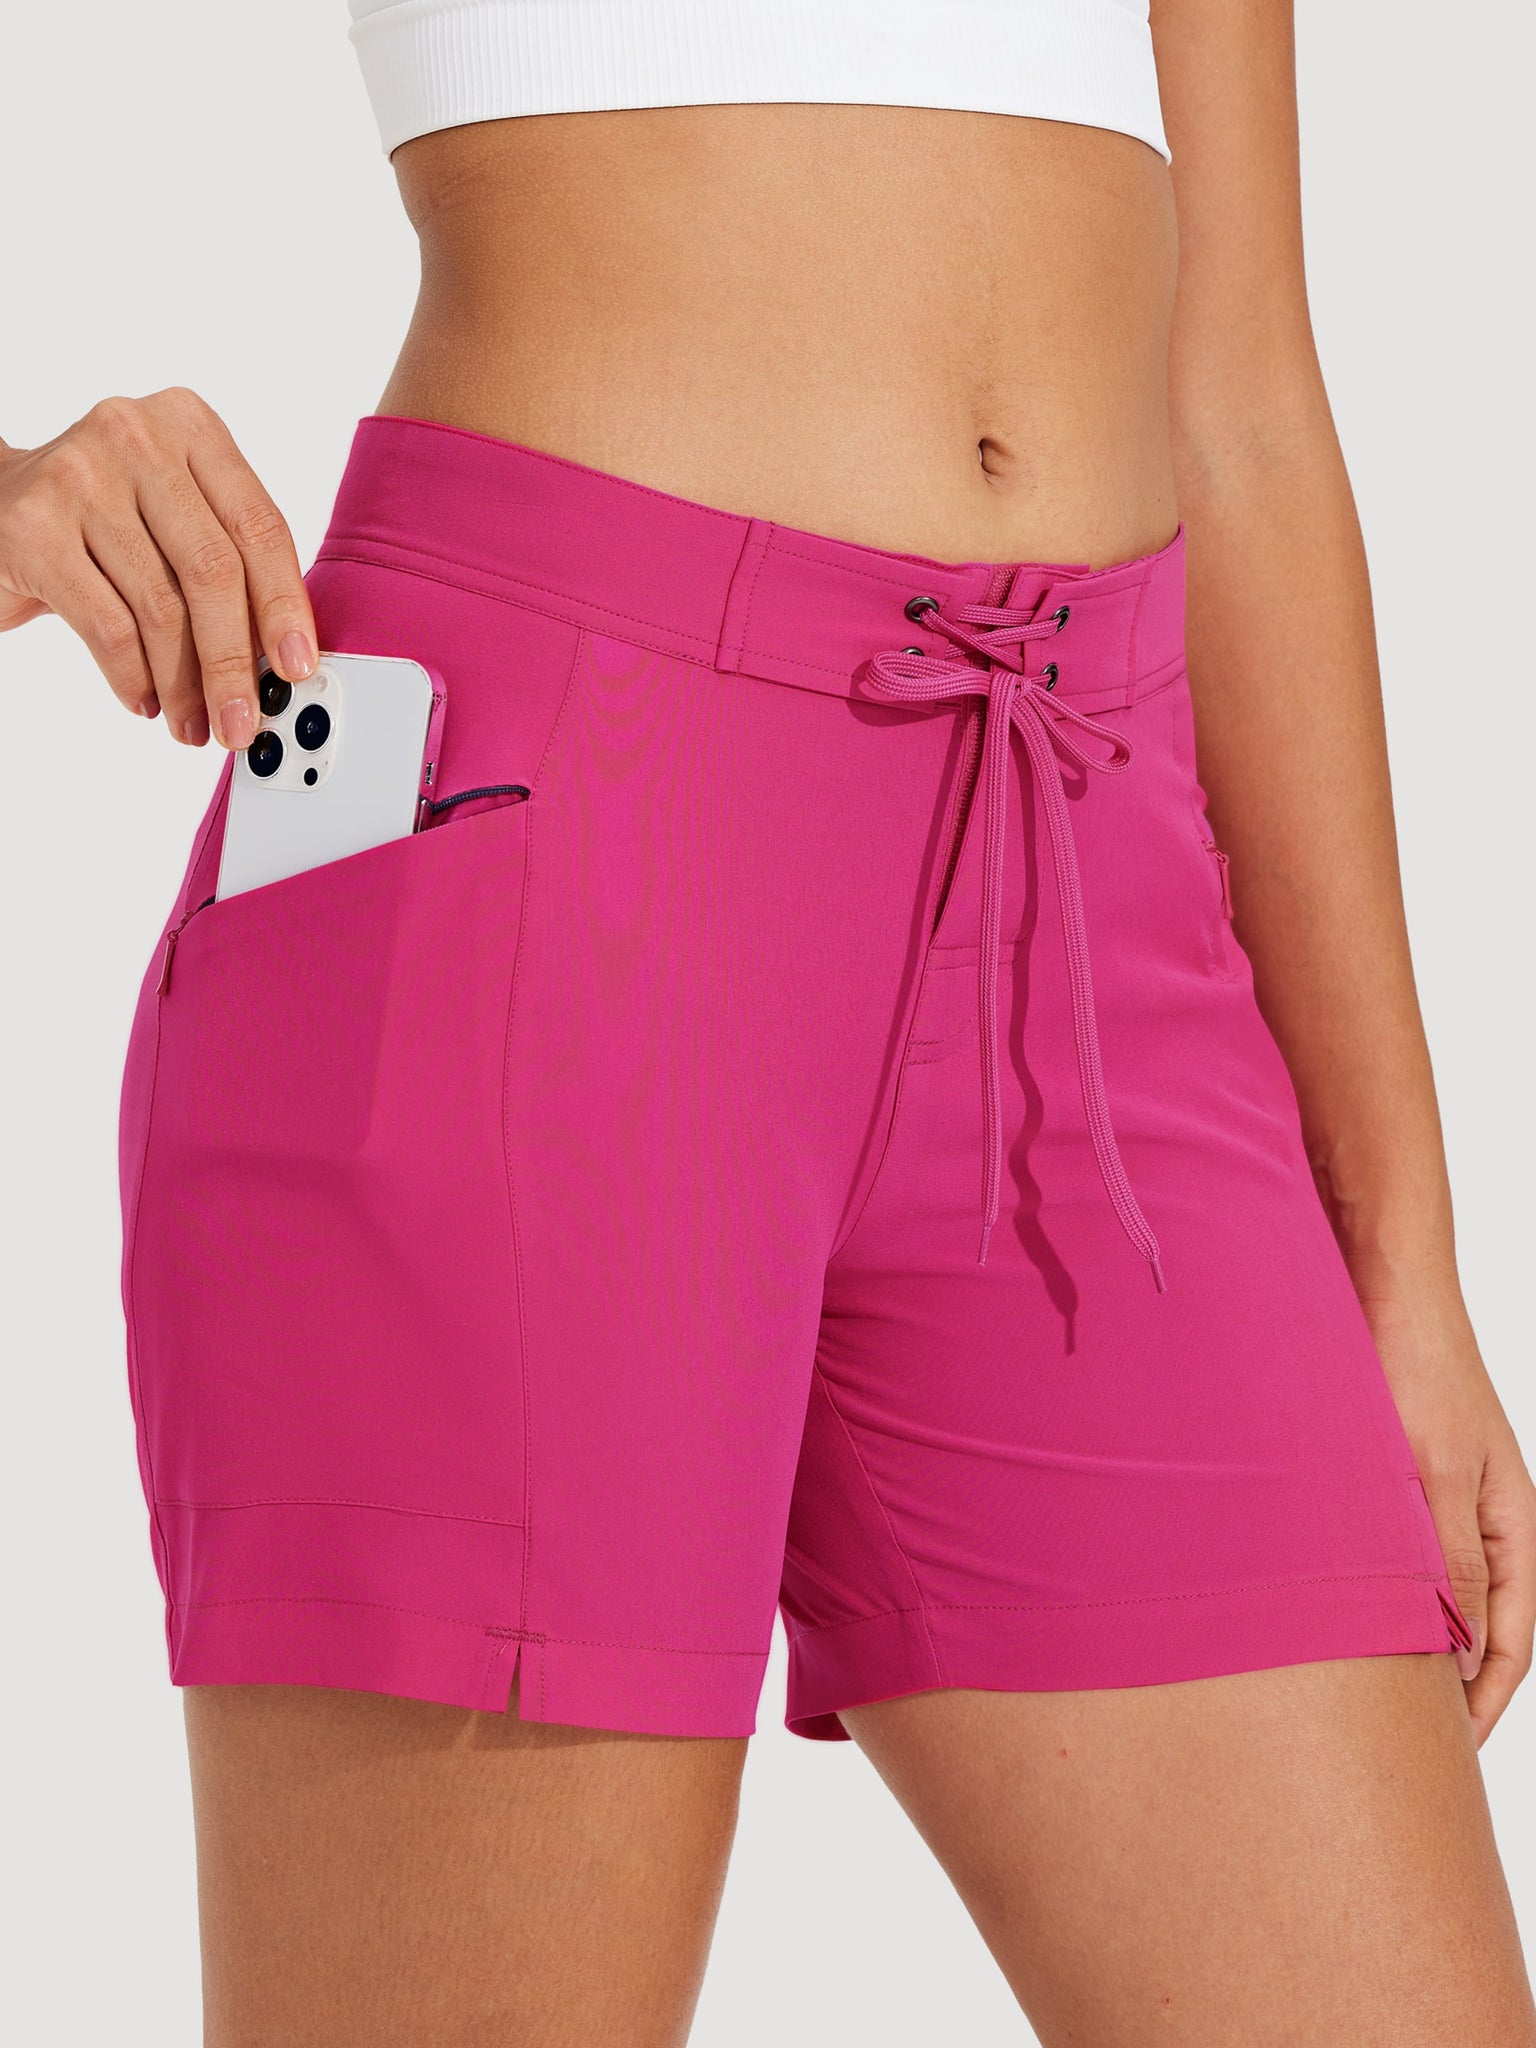 Women's Fixed Waist Board Shorts_Pink_model1